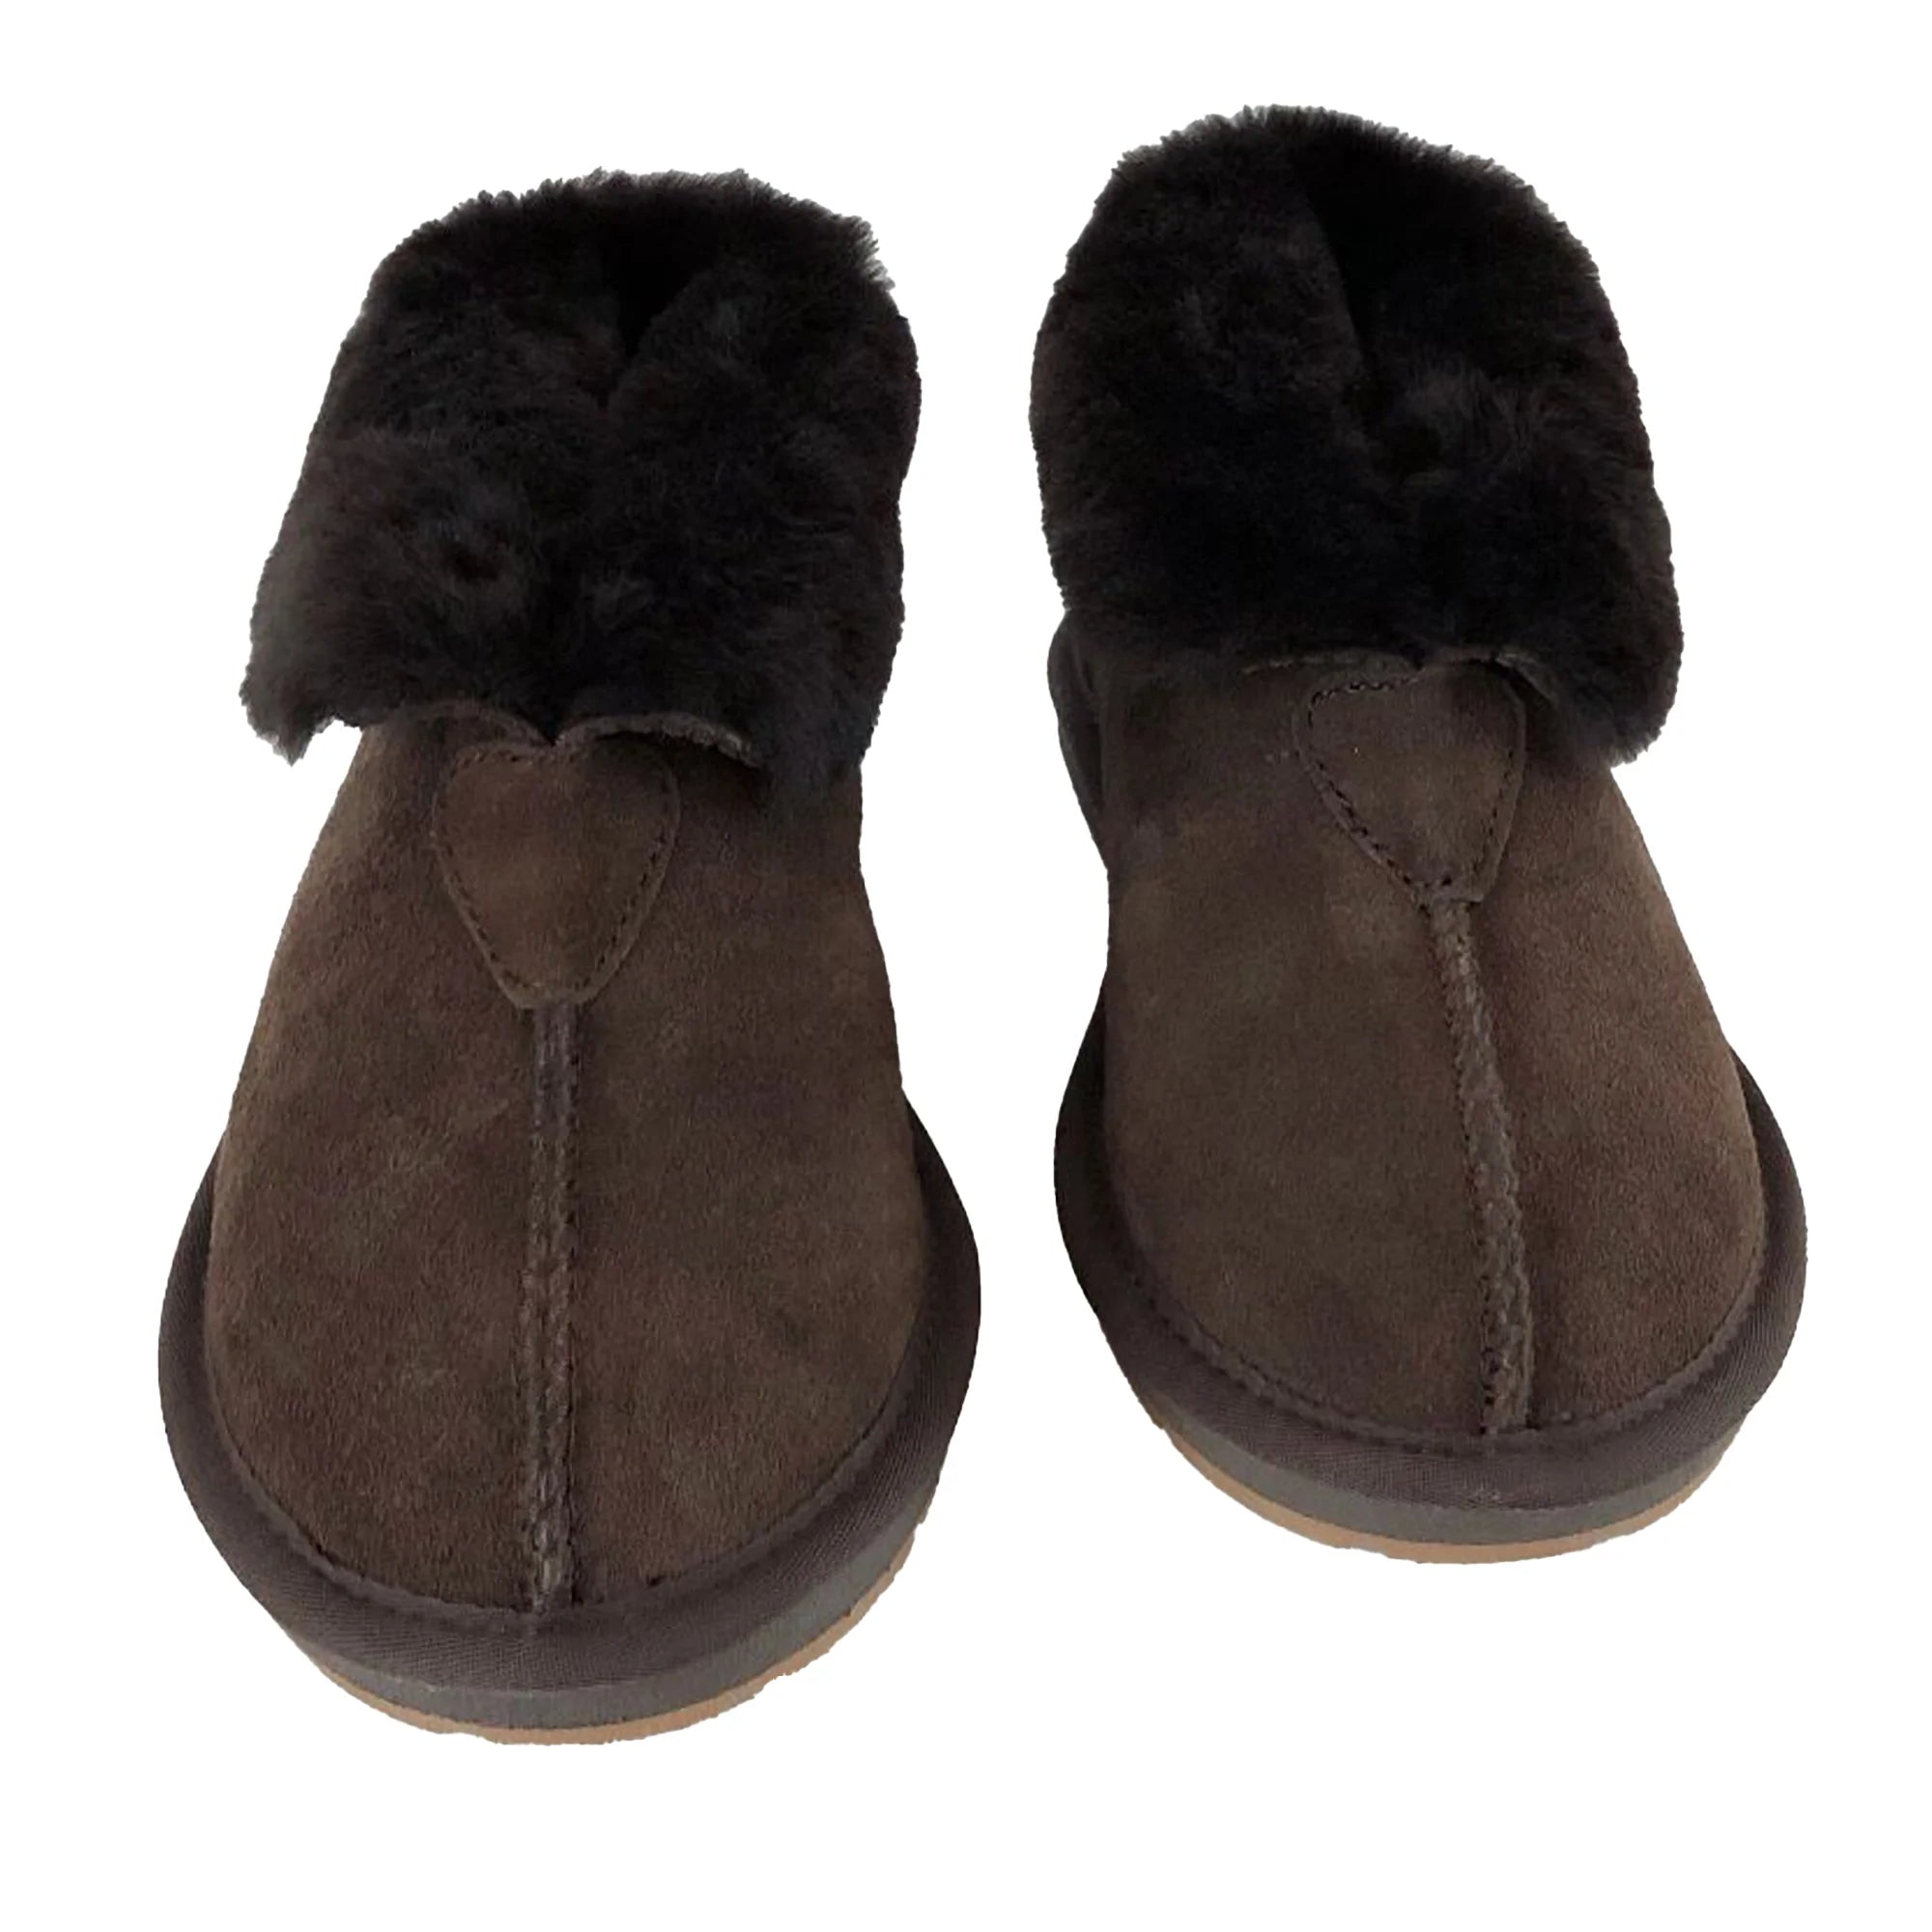 Australian Made Designer Slipper Women's Genuine Australian made sheepskin UGG  slippers – UGG Since 1974